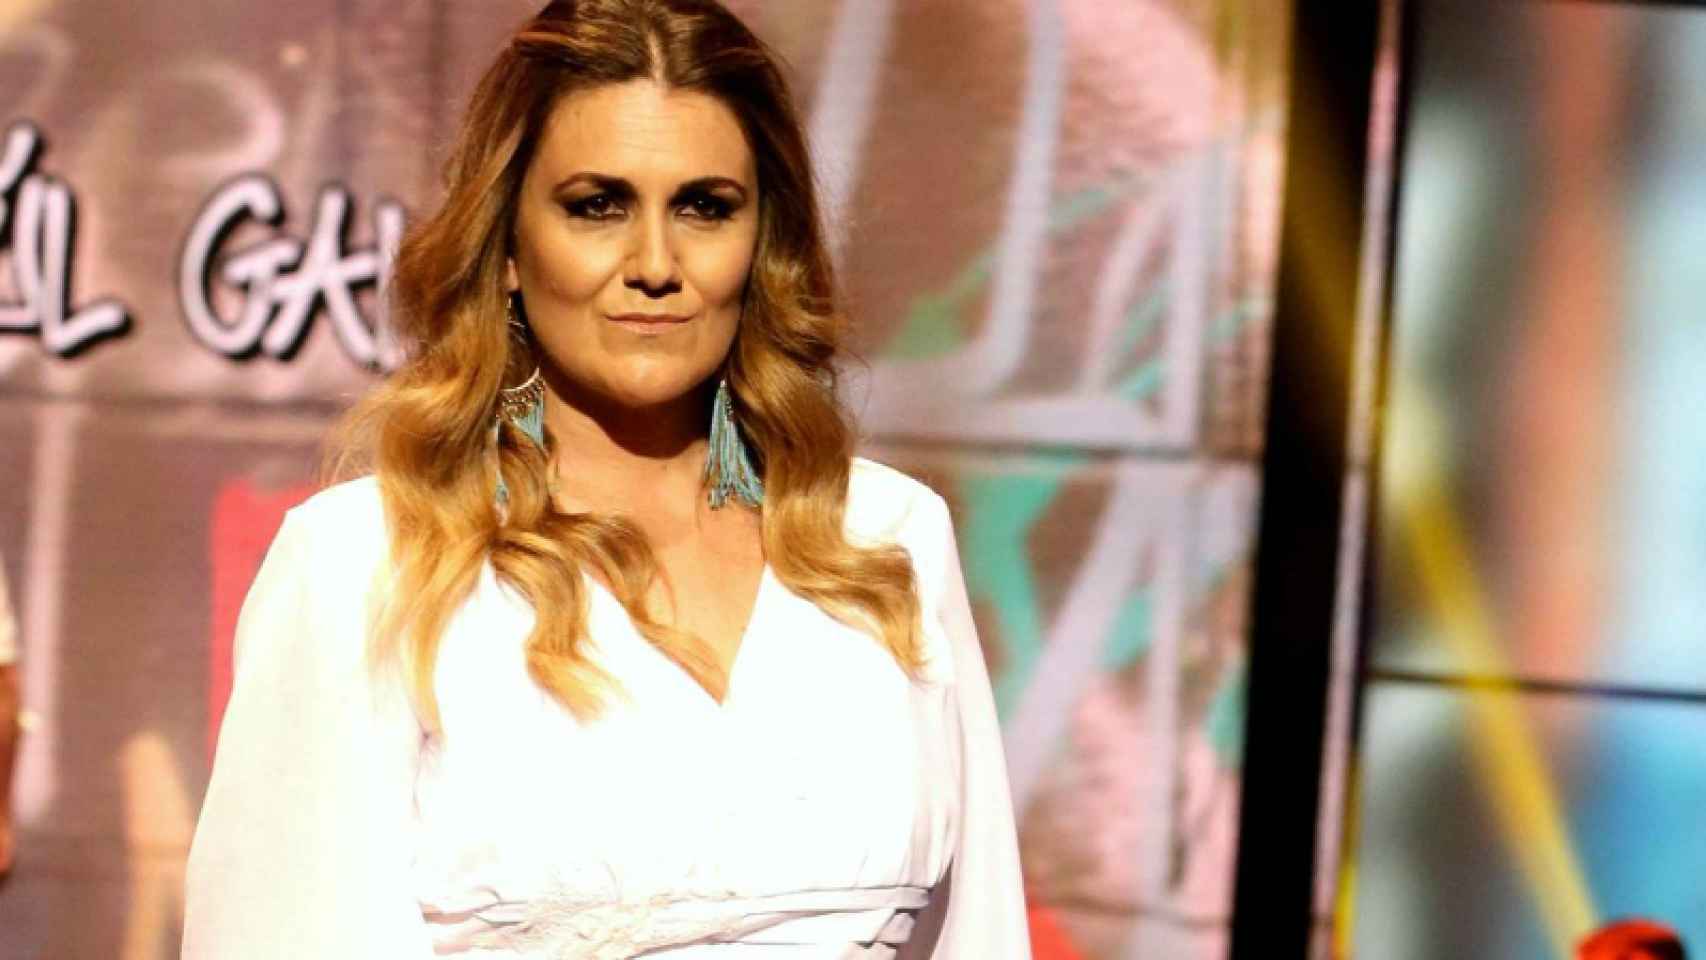 La consagración de Carlota Corredera como presentadora en Telecinco